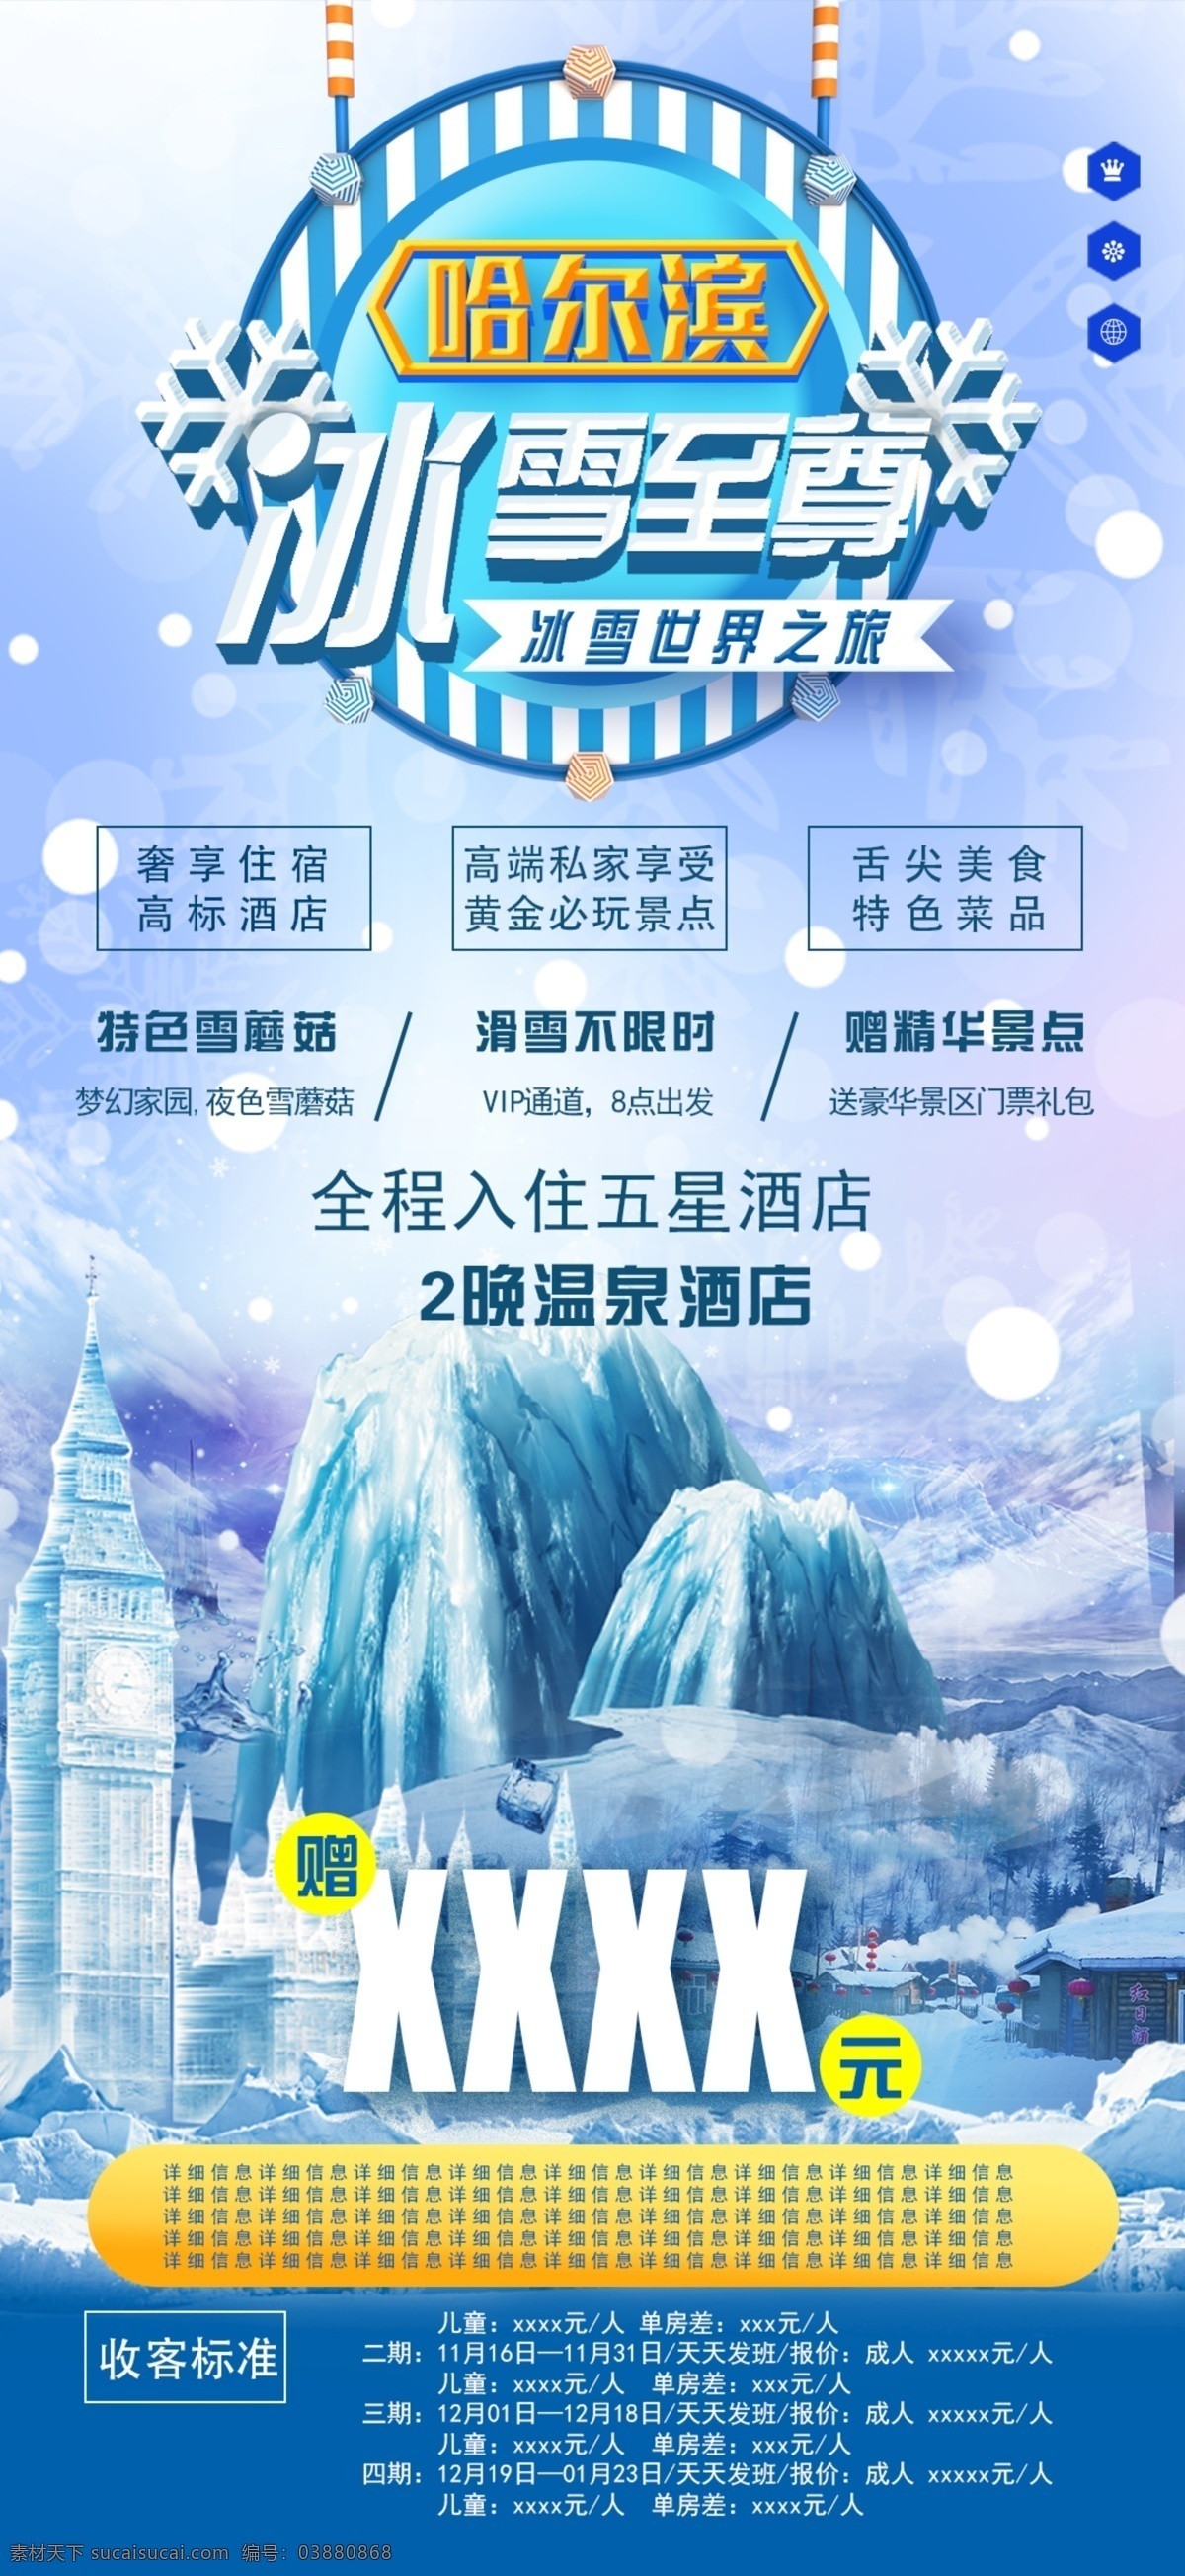 哈尔滨 冰雪 游 冬季 旅游 手机 海报 冰雪游 手机海报